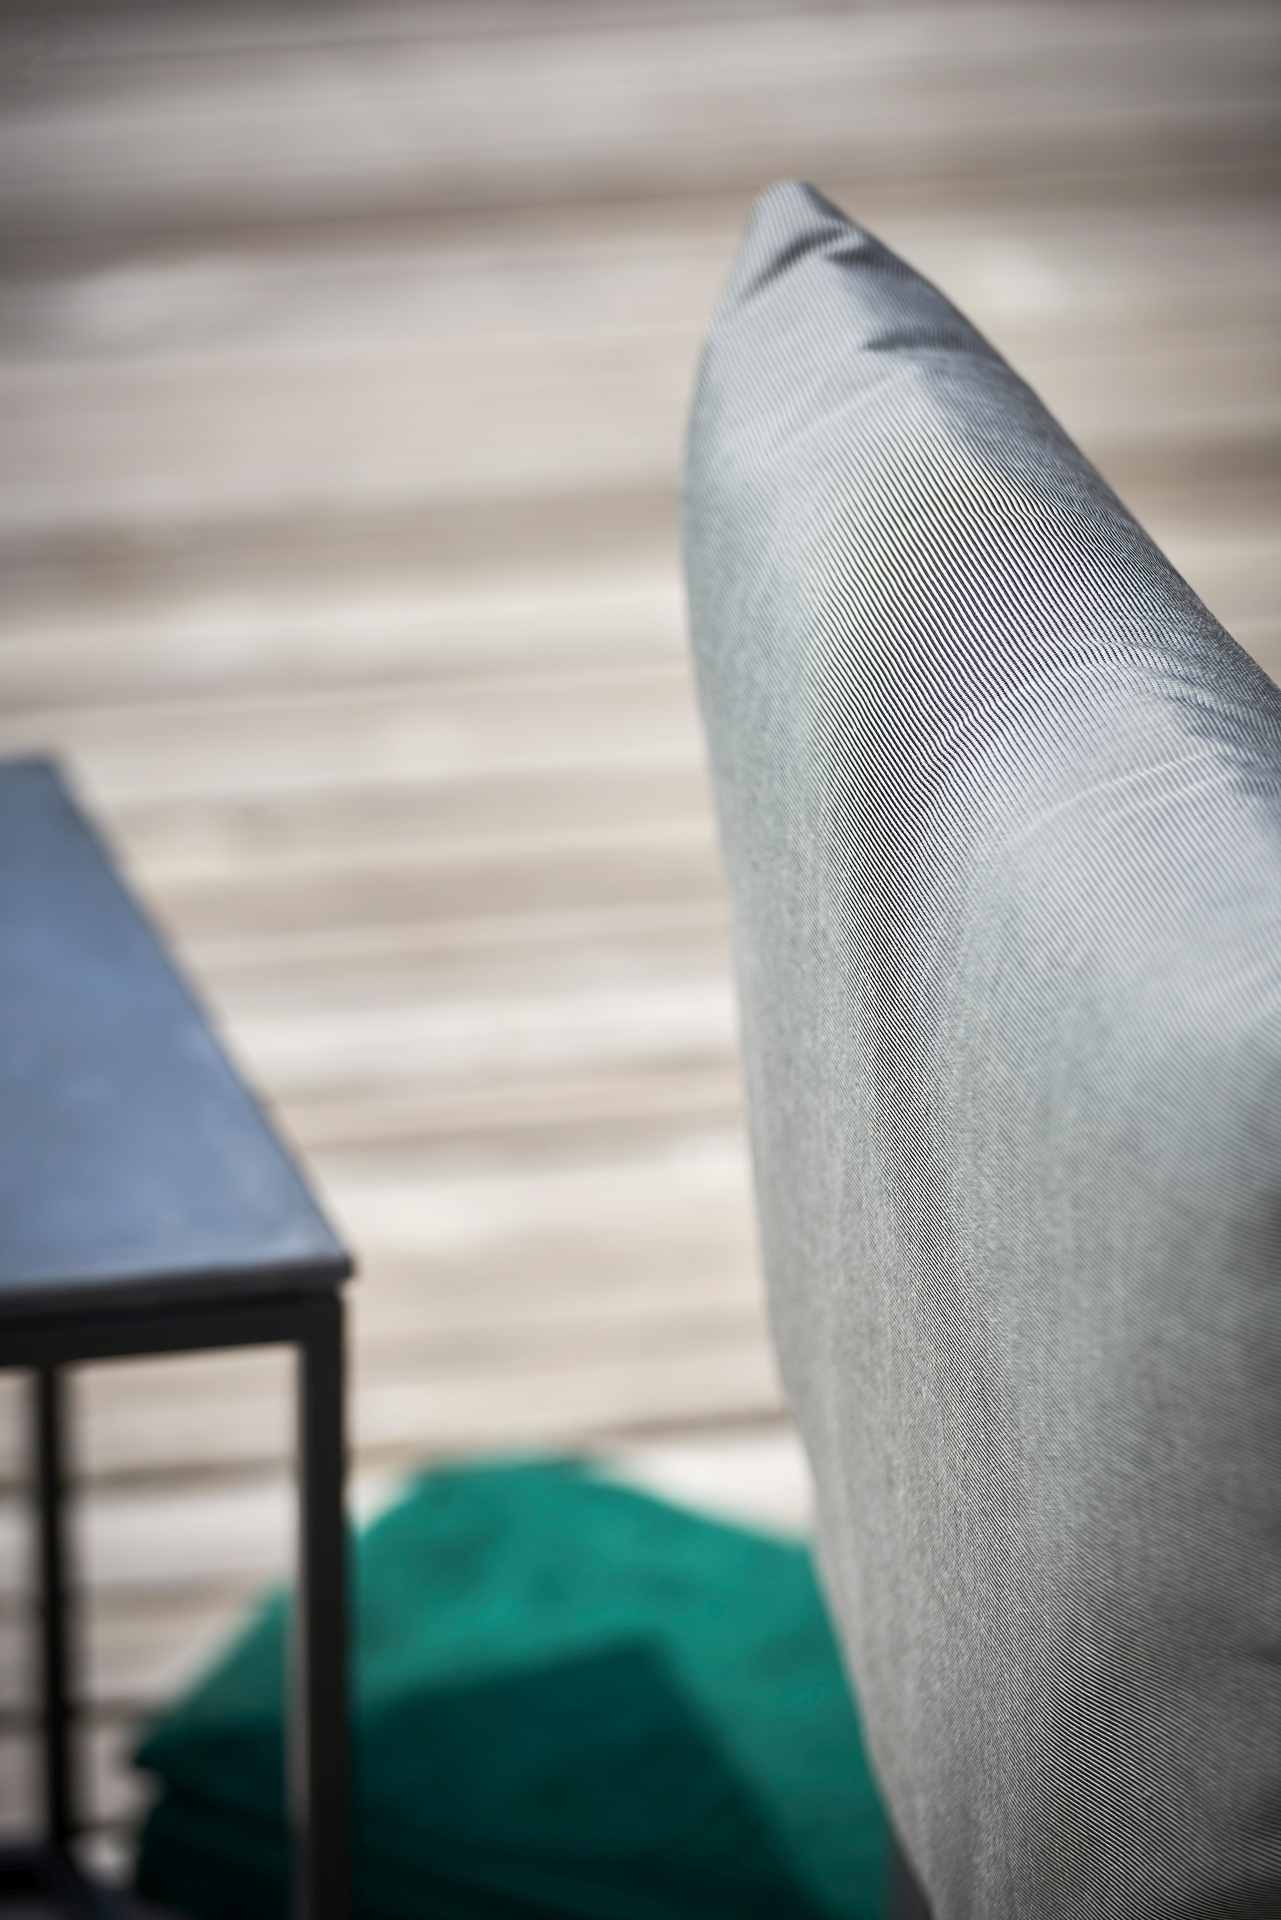 Die Gartenlounge Domino bestehend aus einer 5er-Kombination und einem Sessel. Damit ist sie ein echter Hingucker in deinem Garten. Designet wurde es von der Marke Jan Kurtz. Das Gestell ist aus Aluminium und hat eine taupe Farbe. Der Bezug ist Schwarz.